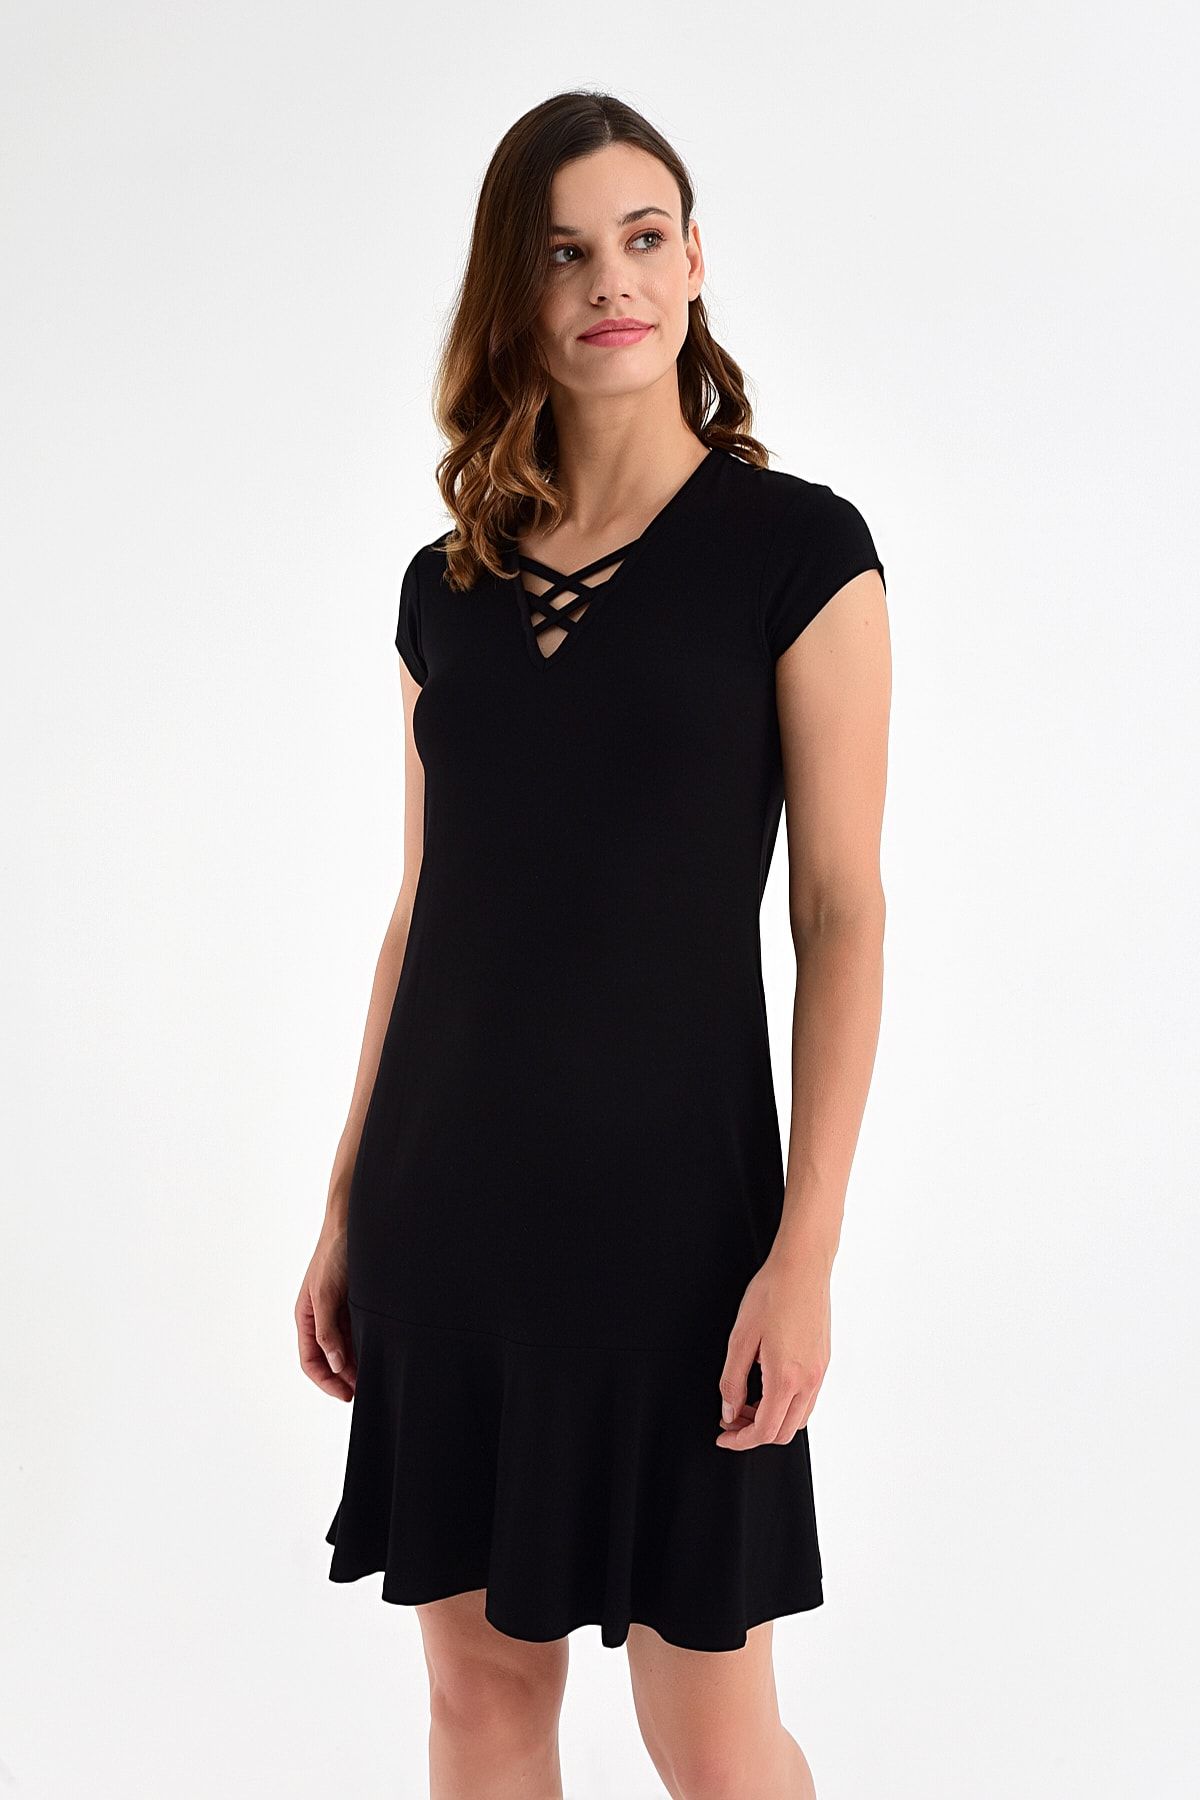 Laranor Kadın Siyah Yaka Detay Etek Ucu Volanlı Elbise 20L6810